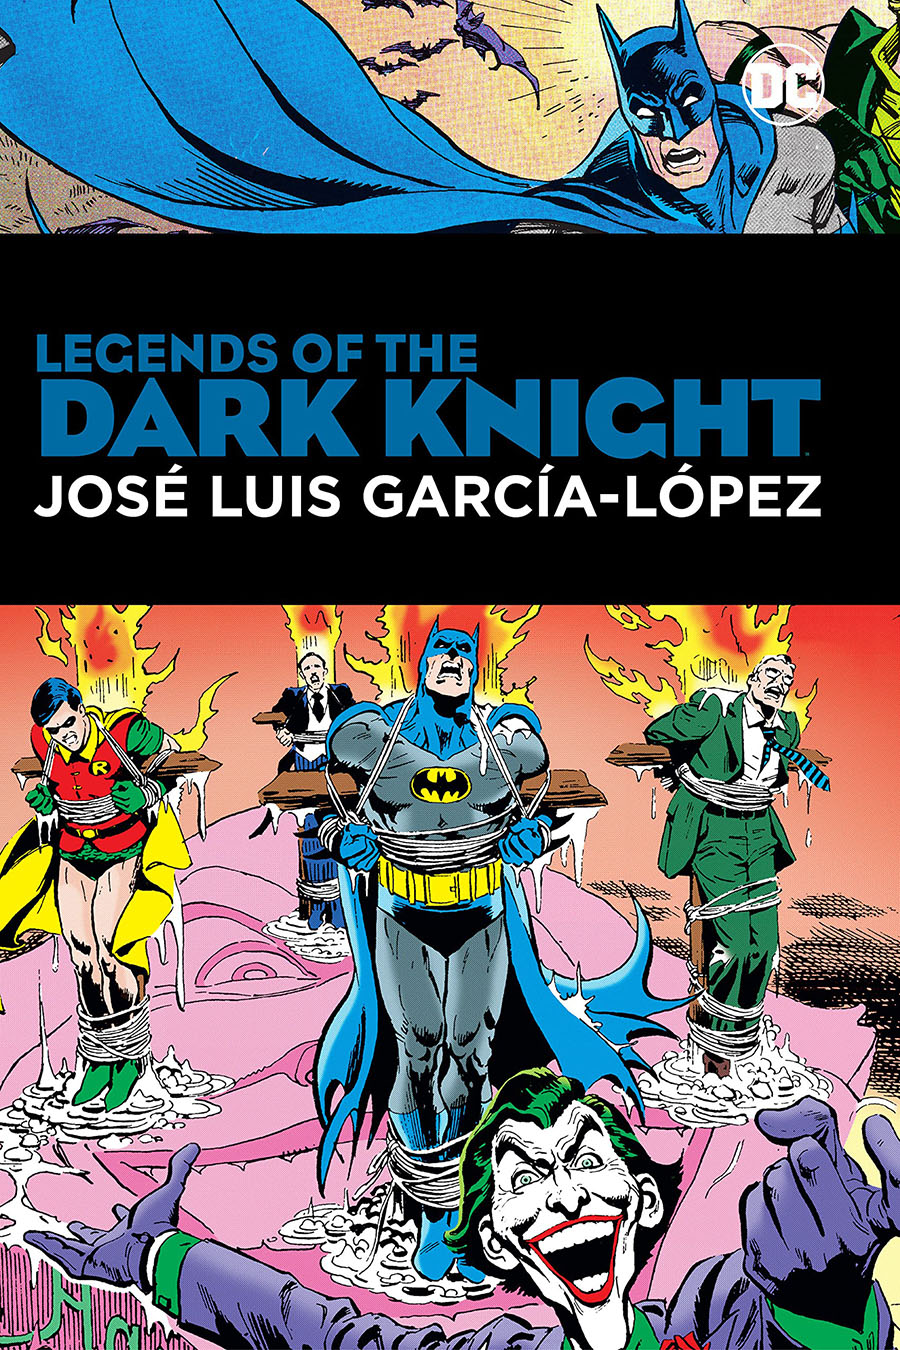 Legends of the dark knight jose luis garcia lopez